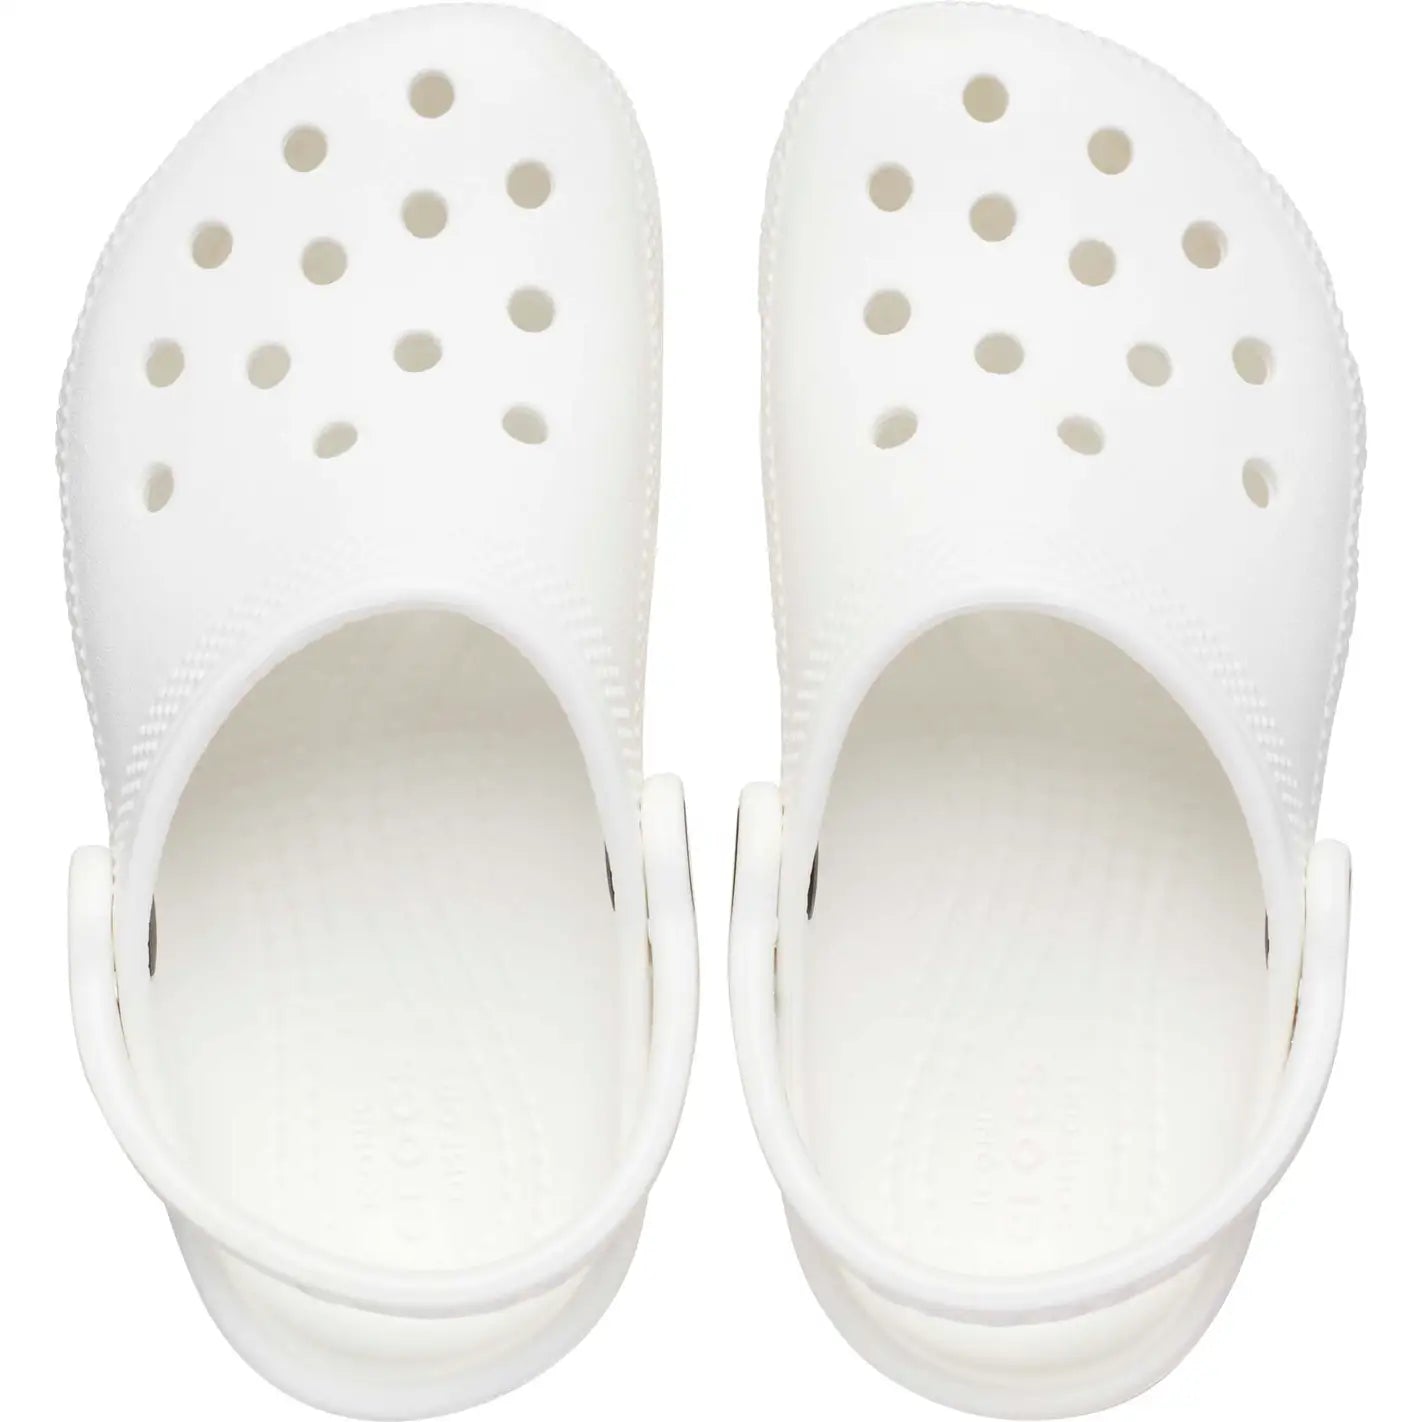 CR-Q6 (Crocs classic clog kids white) 92392826